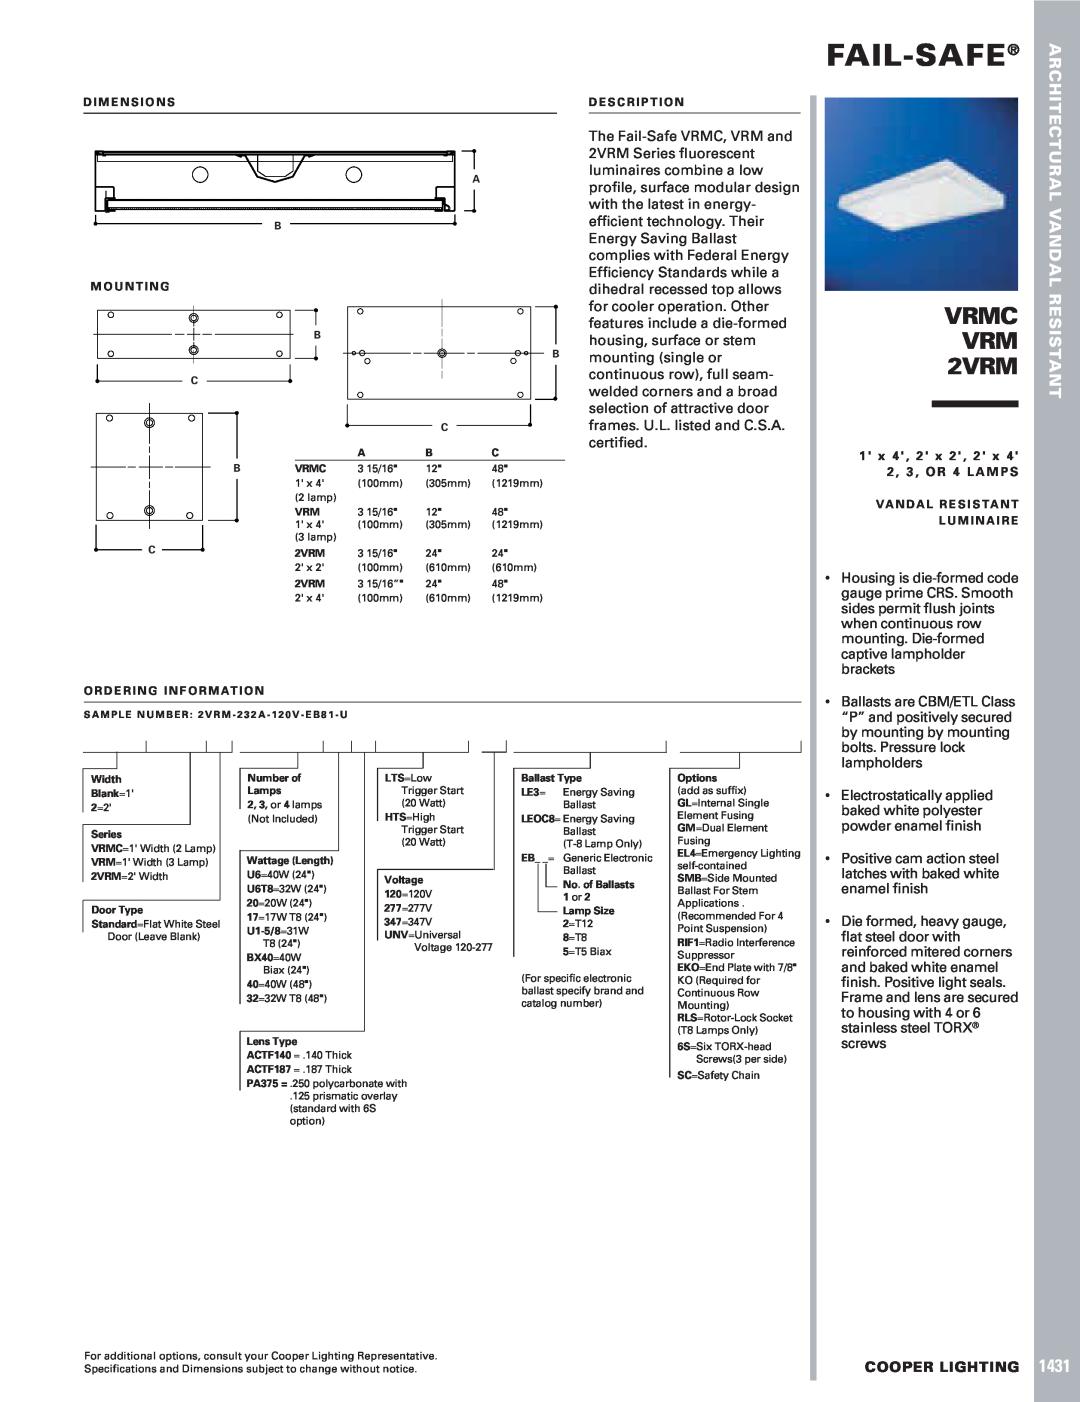 Cooper Lighting dimensions Fail-Safe, VRMC VRM 2VRM, 1431, Vandal Resistant, Cooper Lighting 